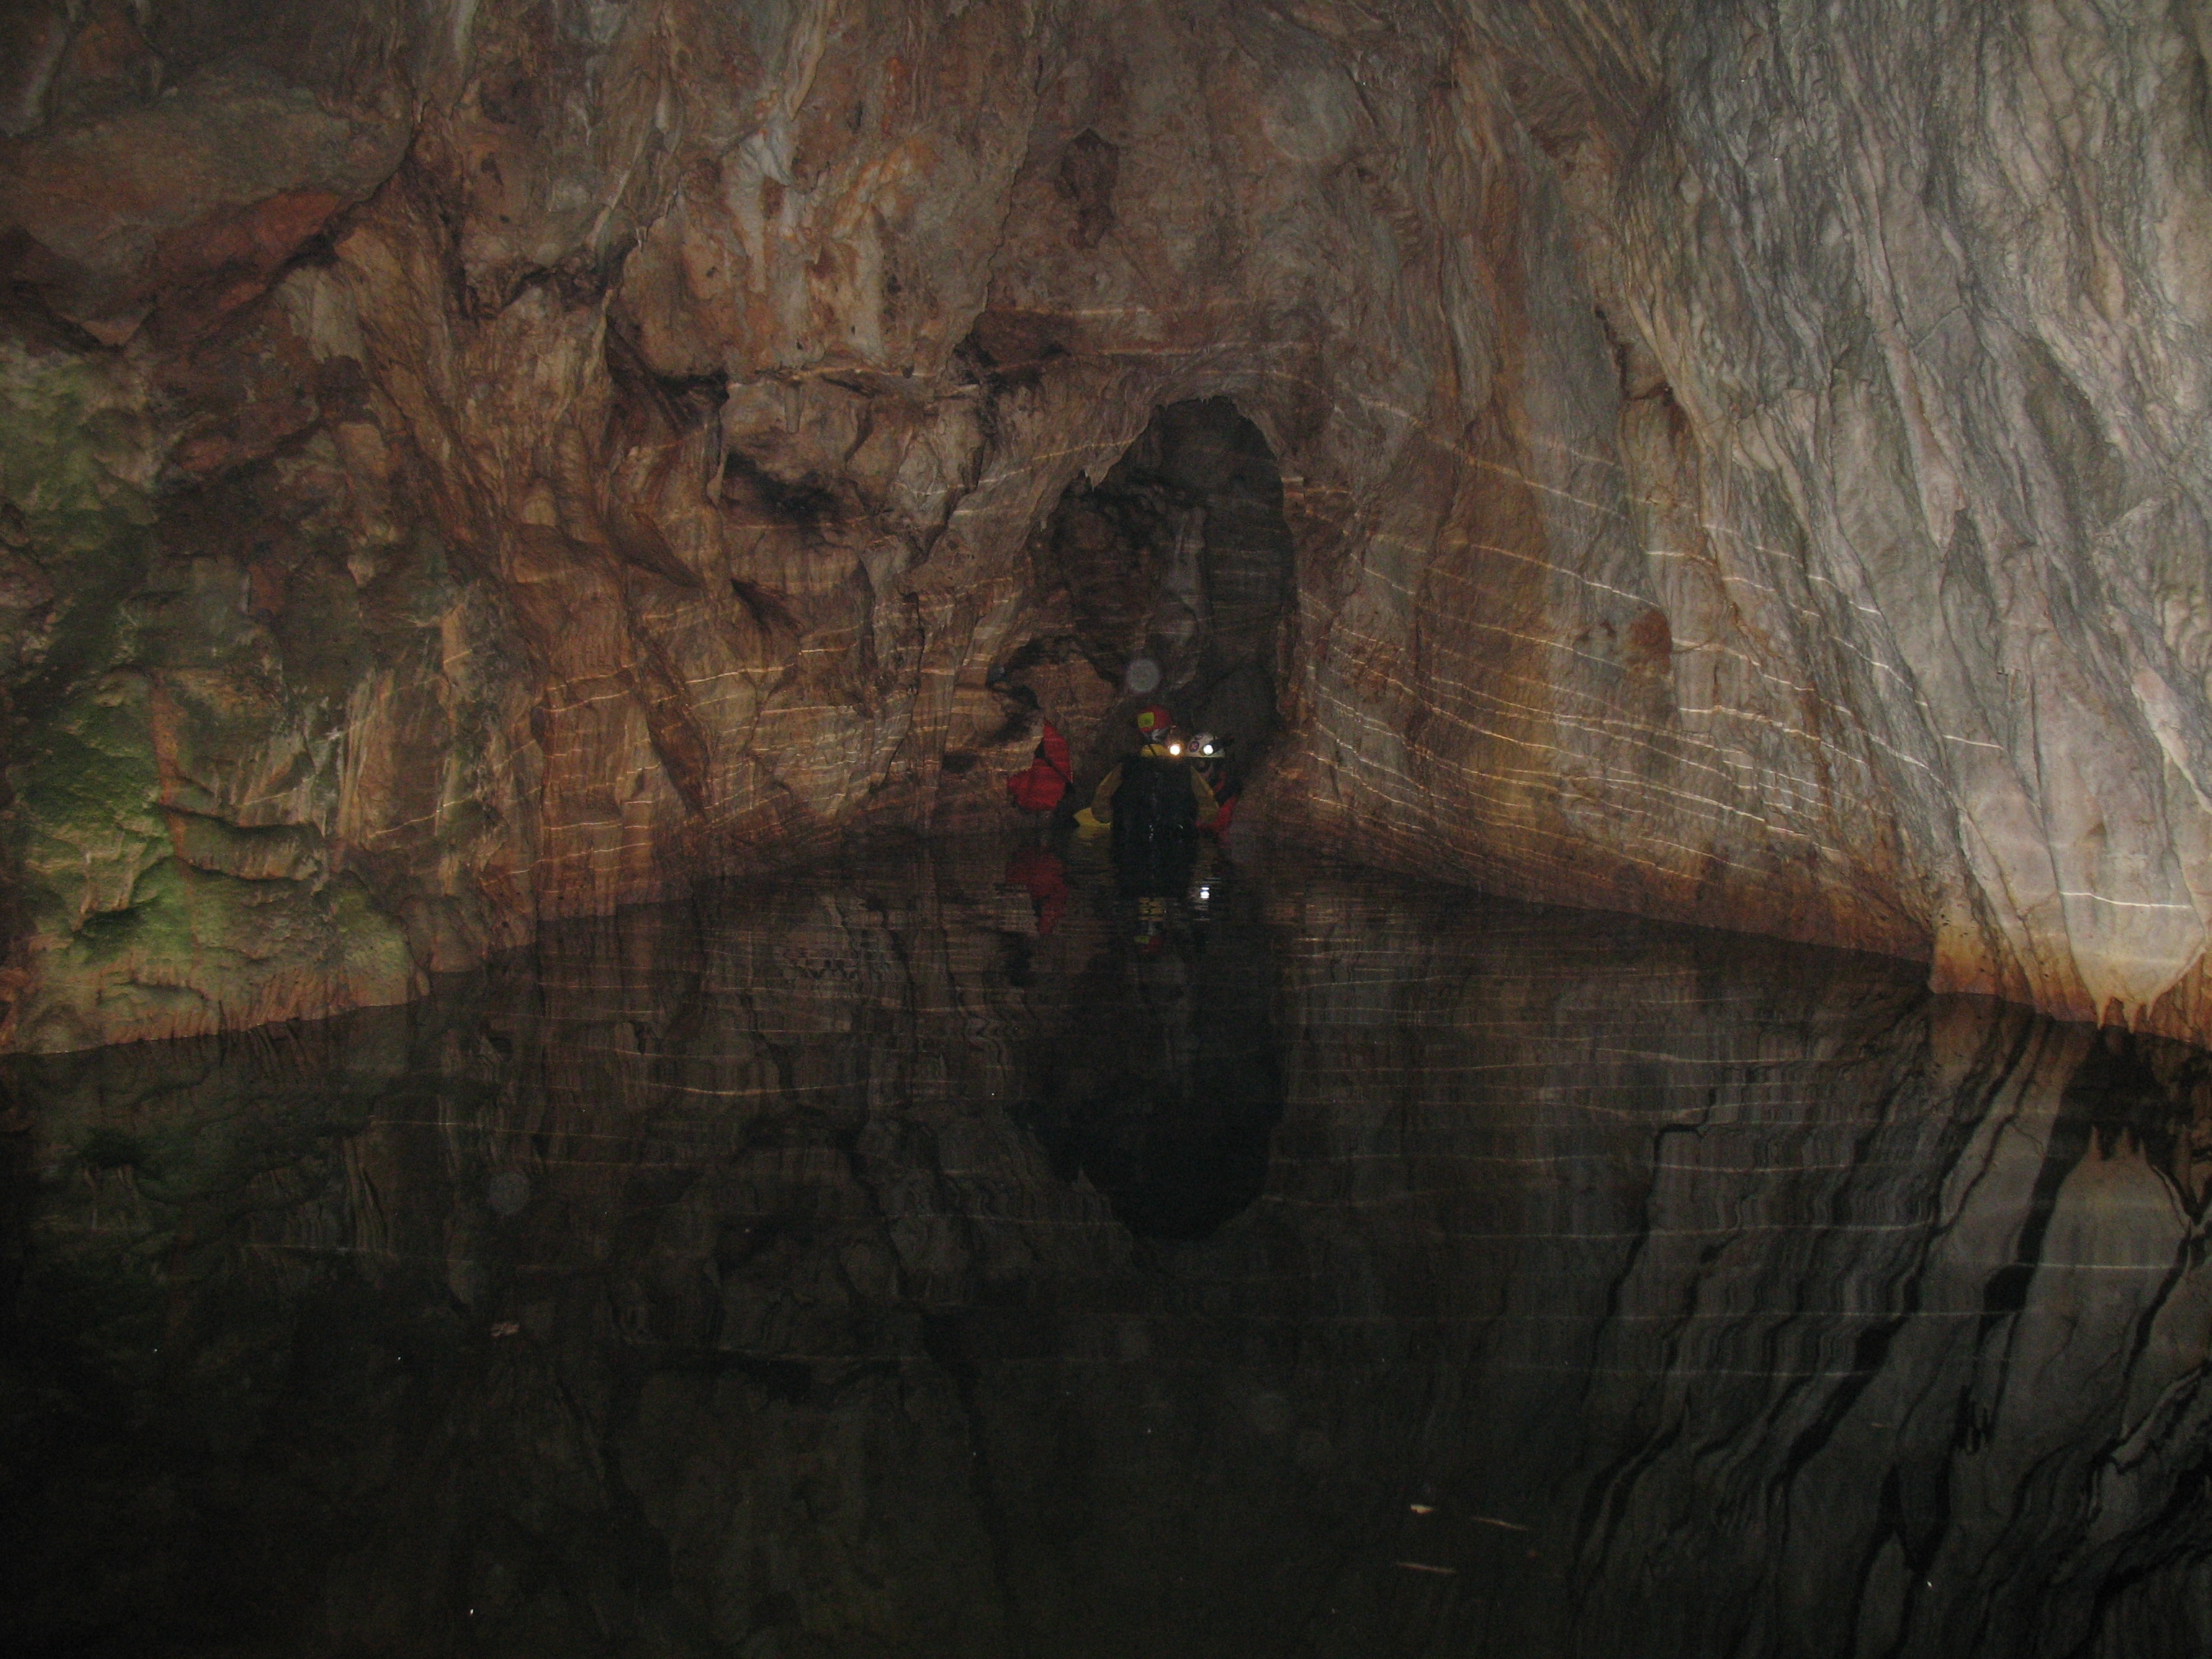 Geokemija tragova ekotoksičnih metala u vodi, zraku i anhialinim jamama Nacionalnog parka Mljet